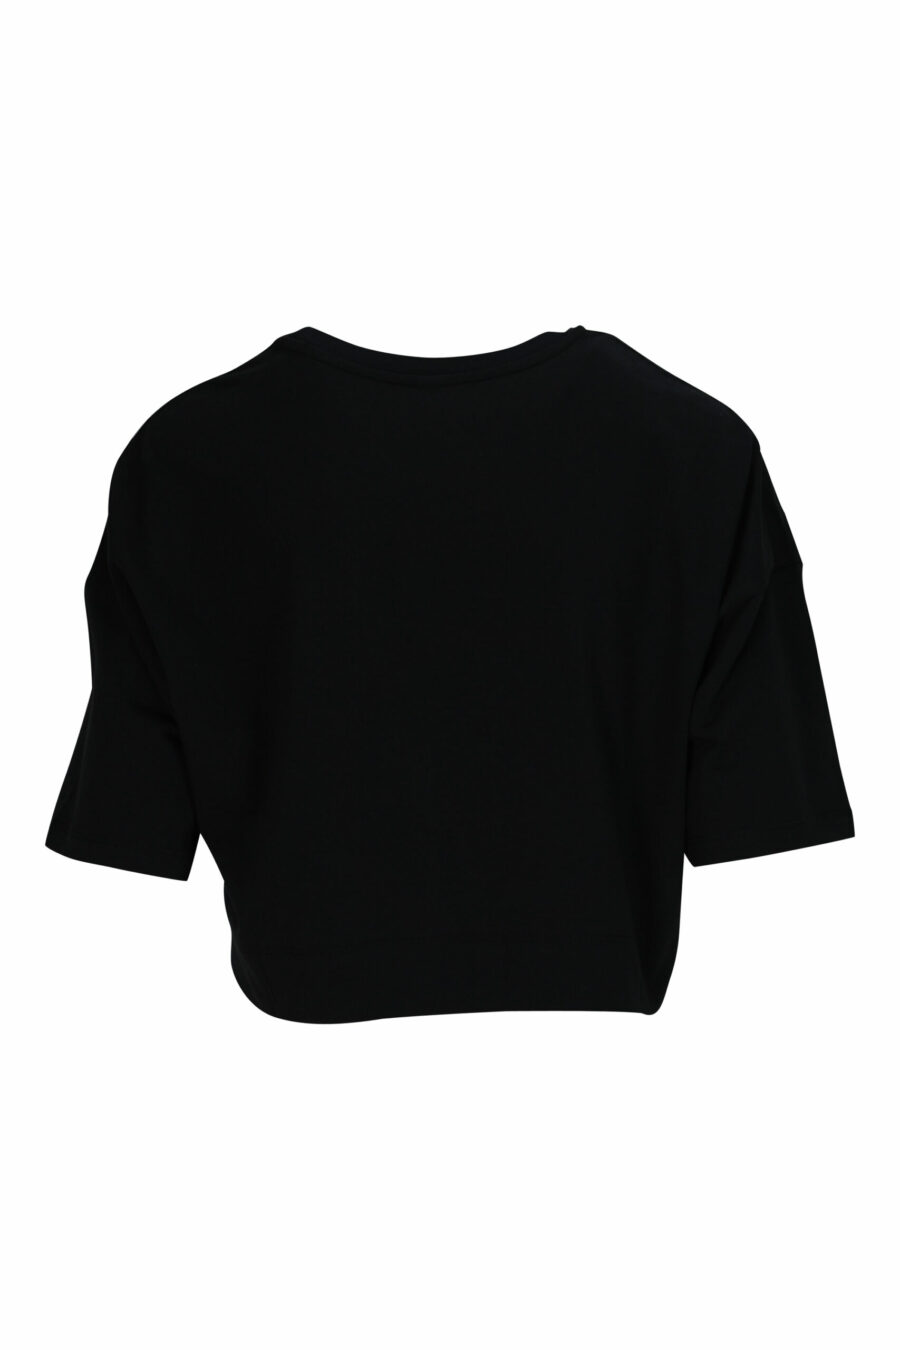 Camiseta negra corta con logo en cinta hombros blanco - 667113696454 1 scaled